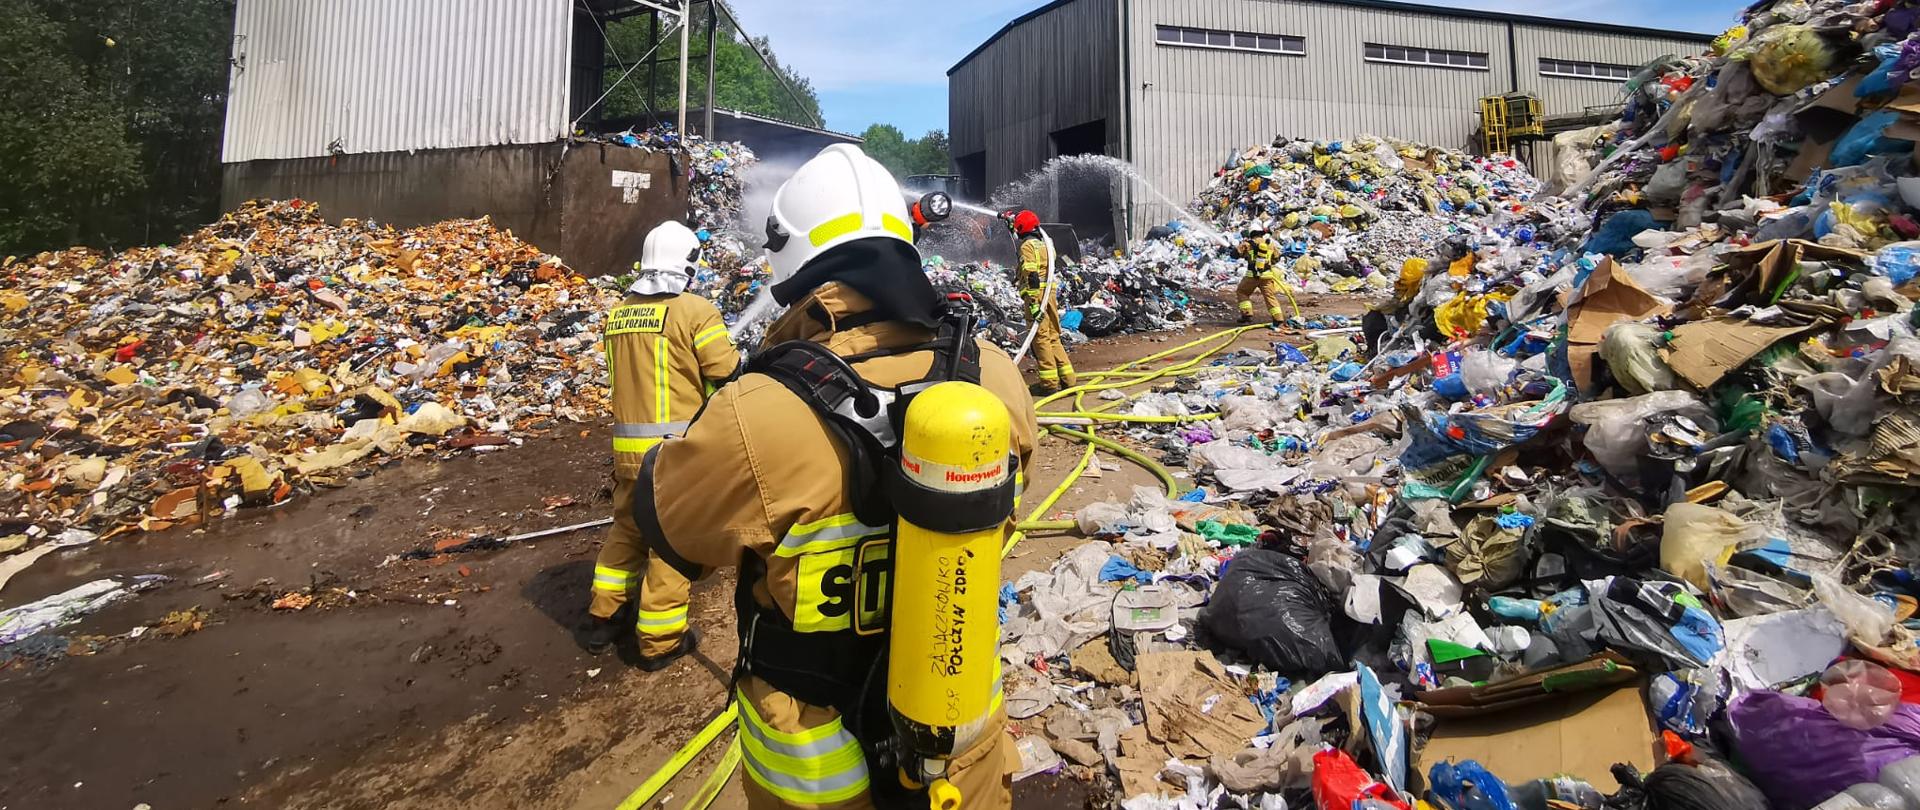 Zdjęcie przedstawia gaszenie składowiska odpadów na wysypisku śmieci przez strażaków.